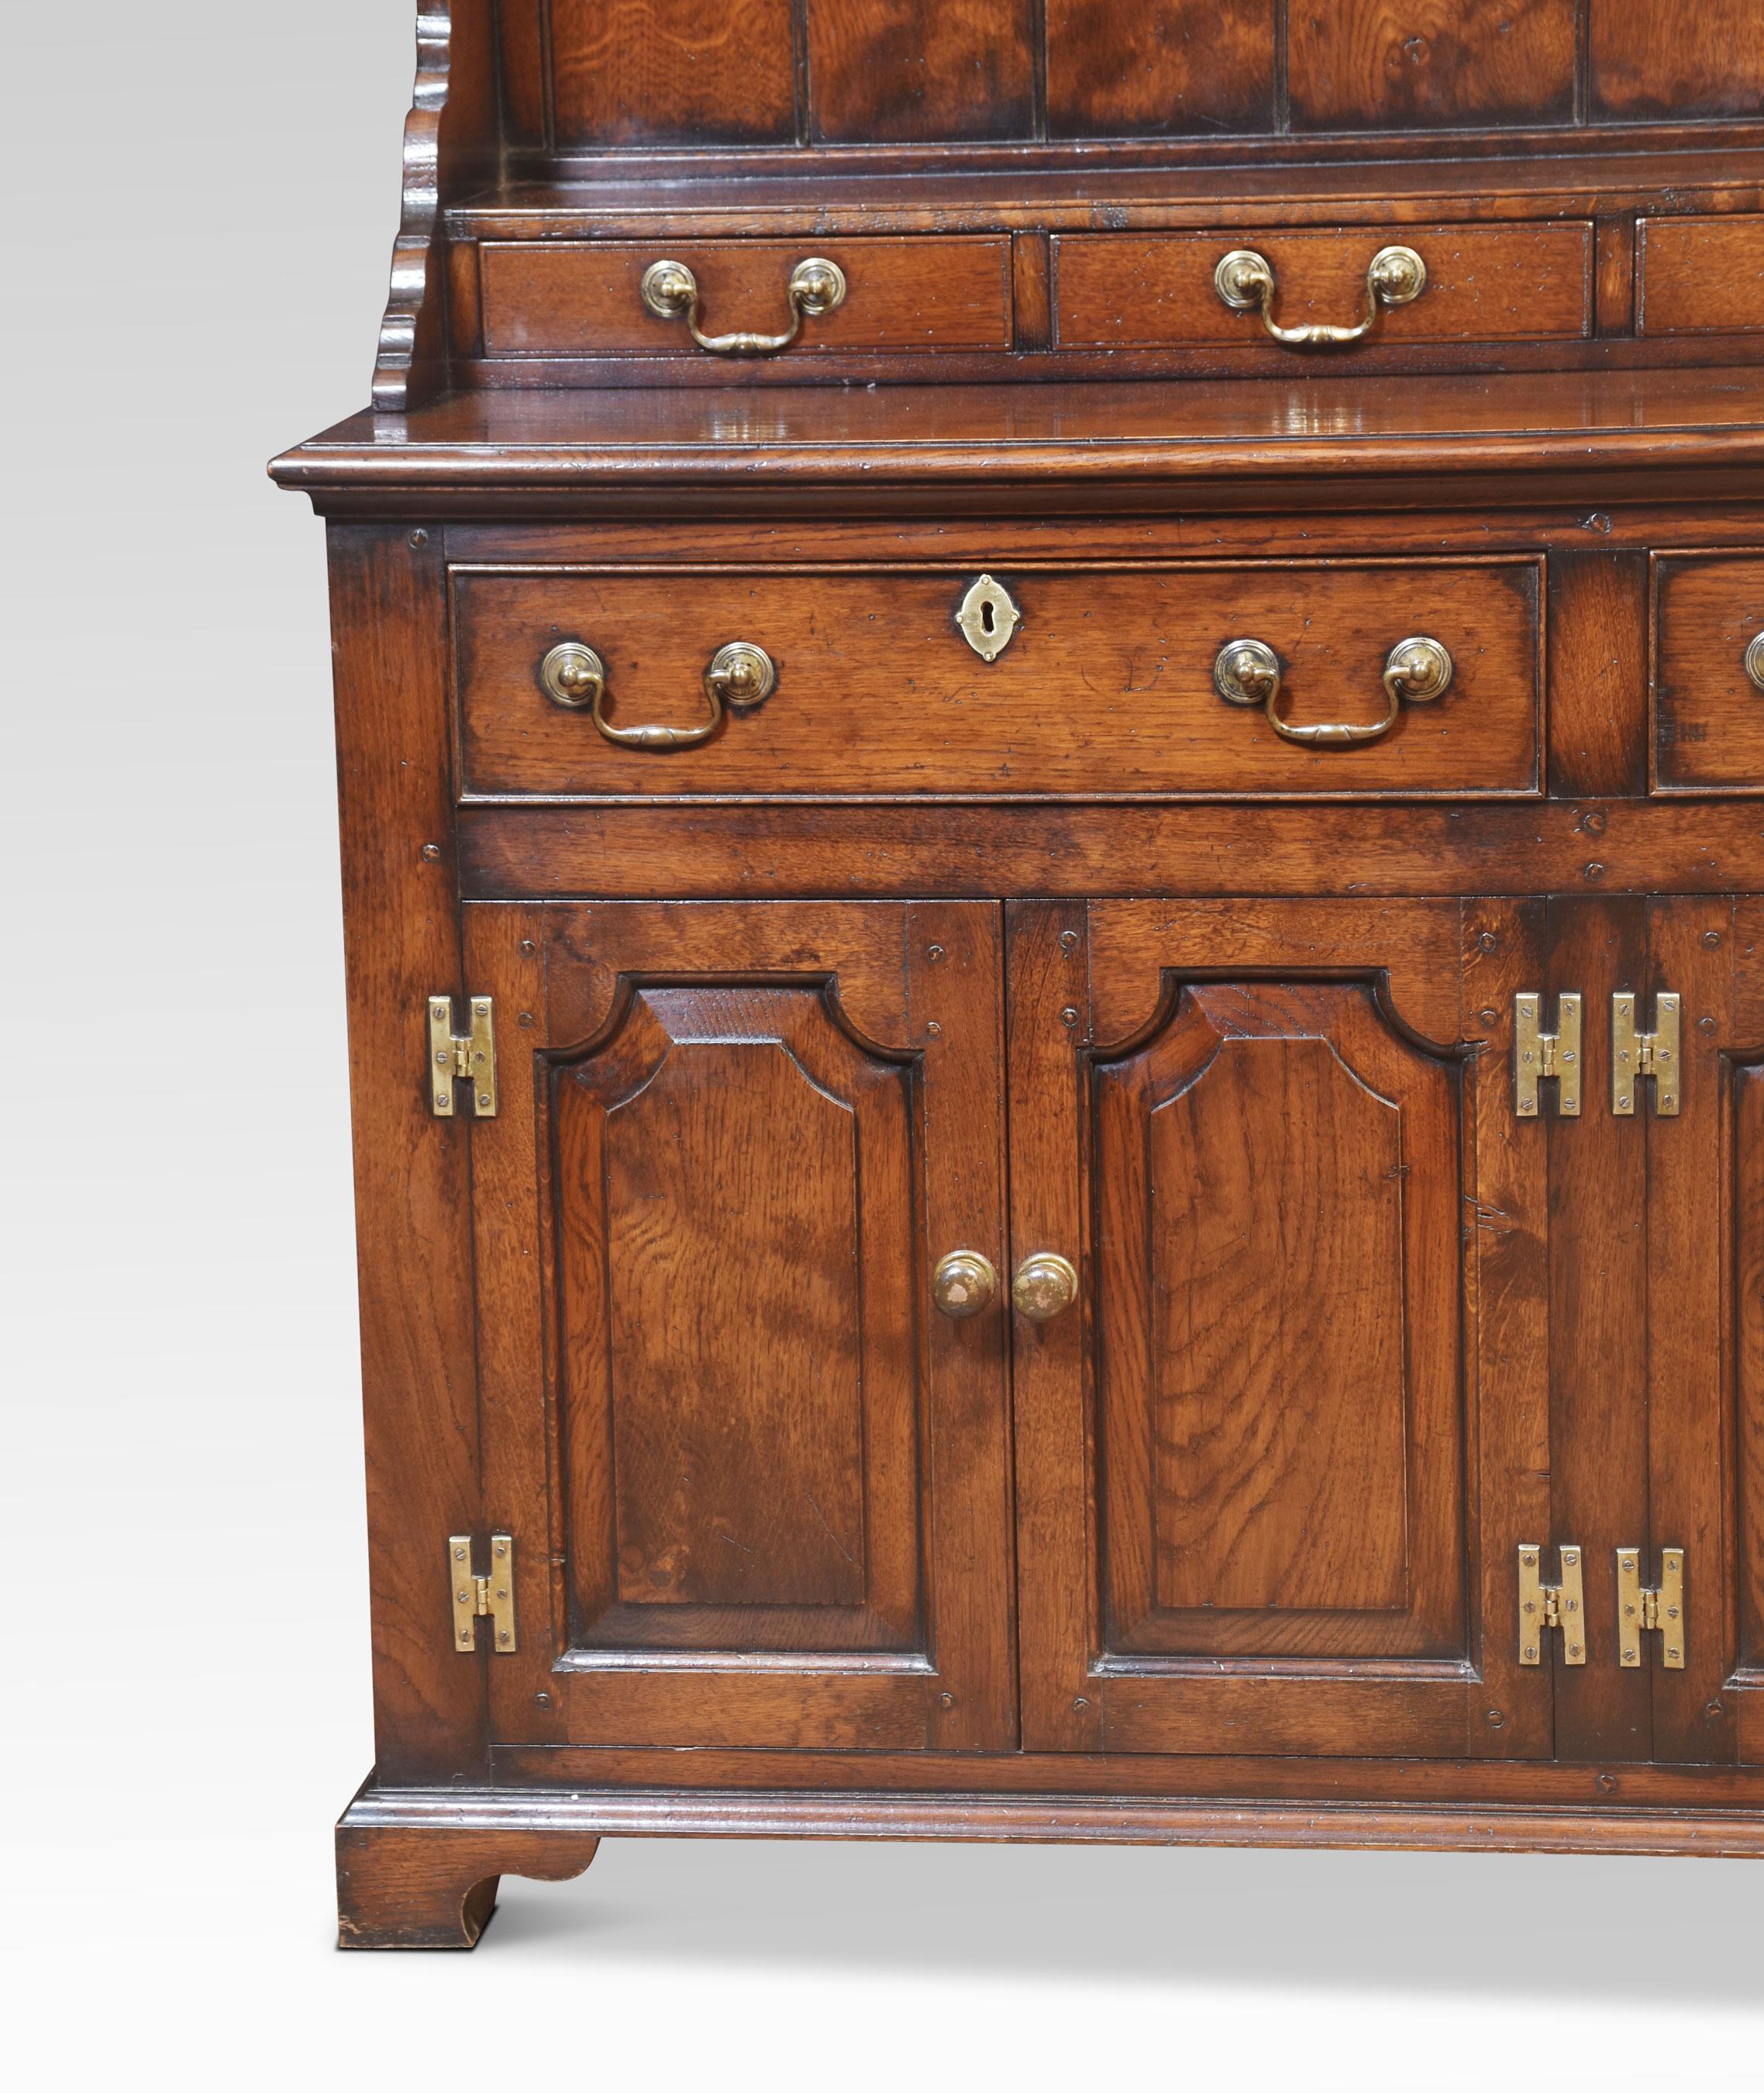 oak dresser for sale